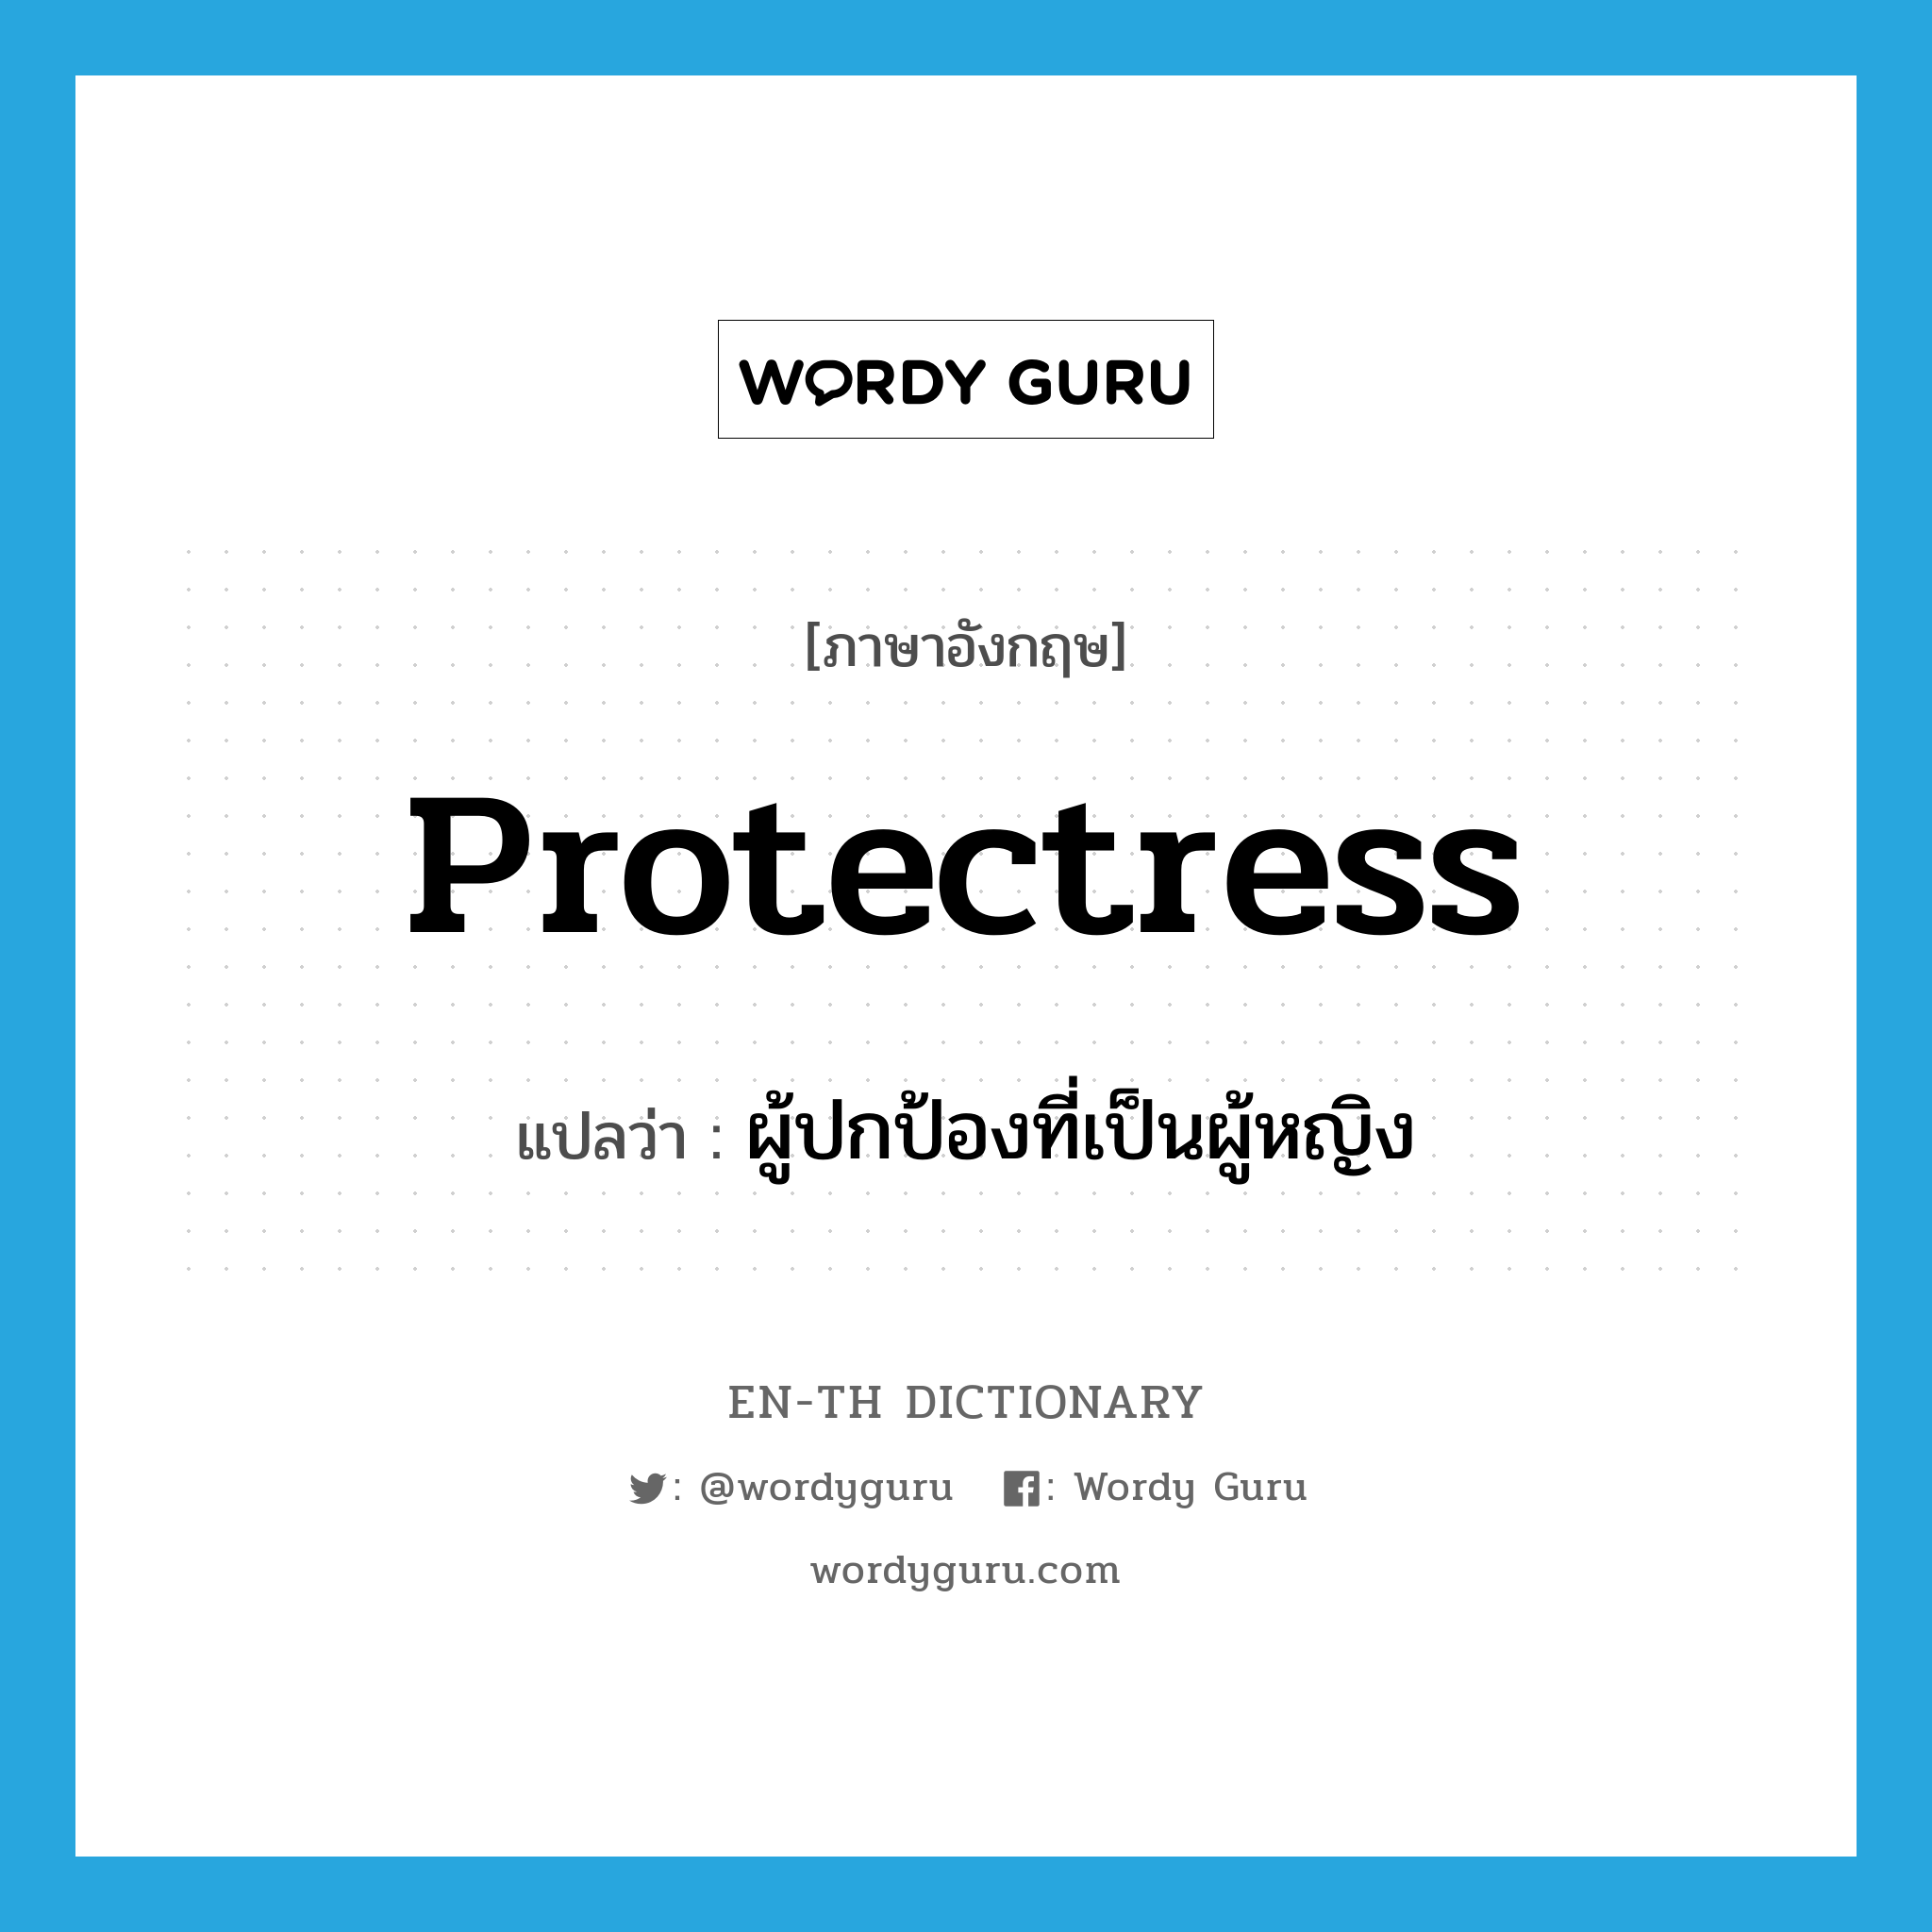 ผู้ปกป้องที่เป็นผู้หญิง ภาษาอังกฤษ?, คำศัพท์ภาษาอังกฤษ ผู้ปกป้องที่เป็นผู้หญิง แปลว่า protectress ประเภท N หมวด N